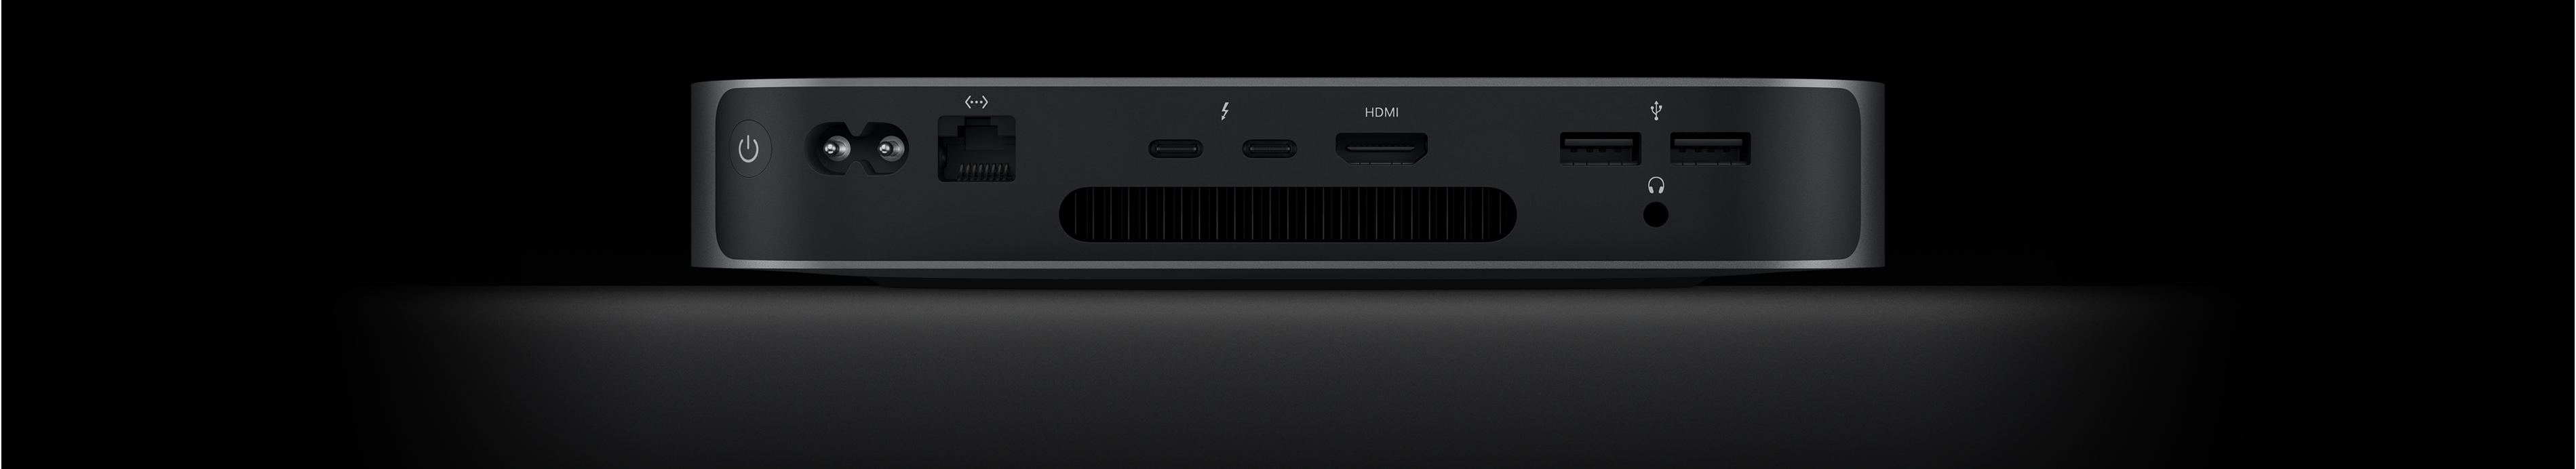 Mac minin taustanäkymä, jossa näkyy kaksi Thunderbolt 4 ‑porttia, HDMI-portti, kaksi USB-A-porttia, kuulokeliitäntä, Gigabit Ethernet ‑portti, virtaportti ja virtapainike.